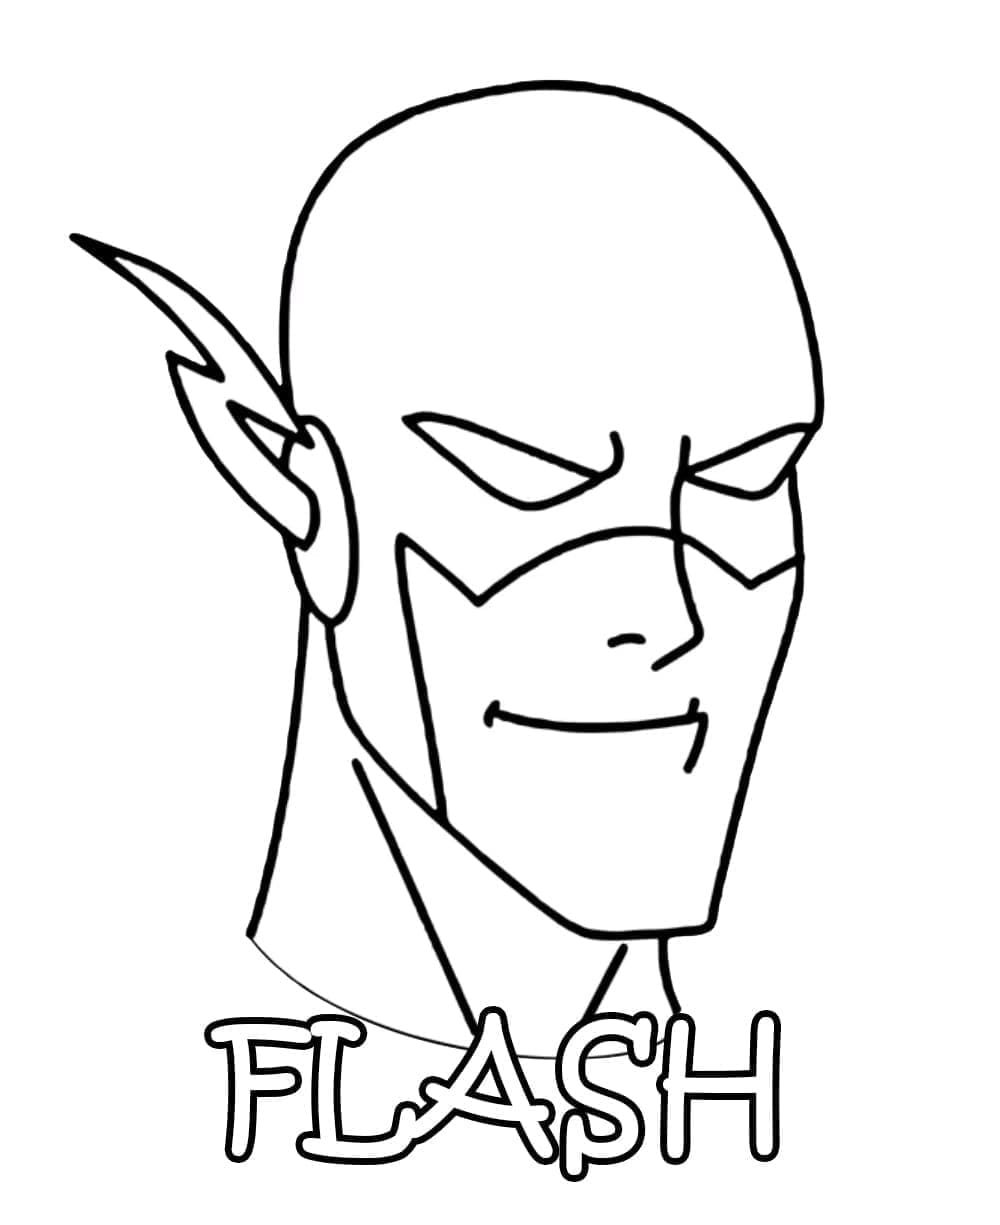 Målarbild Flashs Ansikte